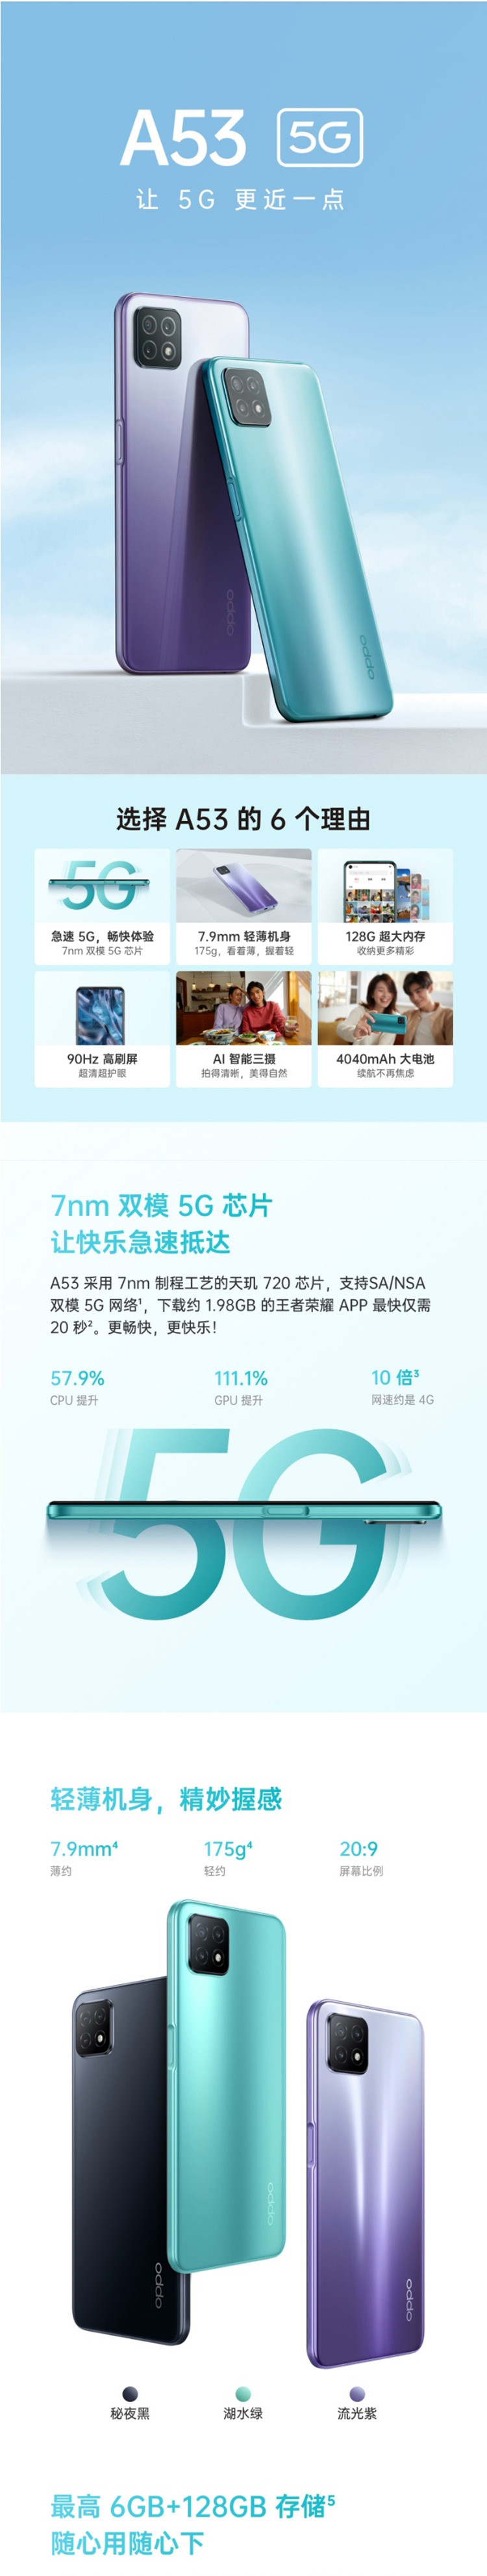 OPPO A53 8GB+128GB 5G AI智能三摄 全面屏拍照视频游戏全网通手机